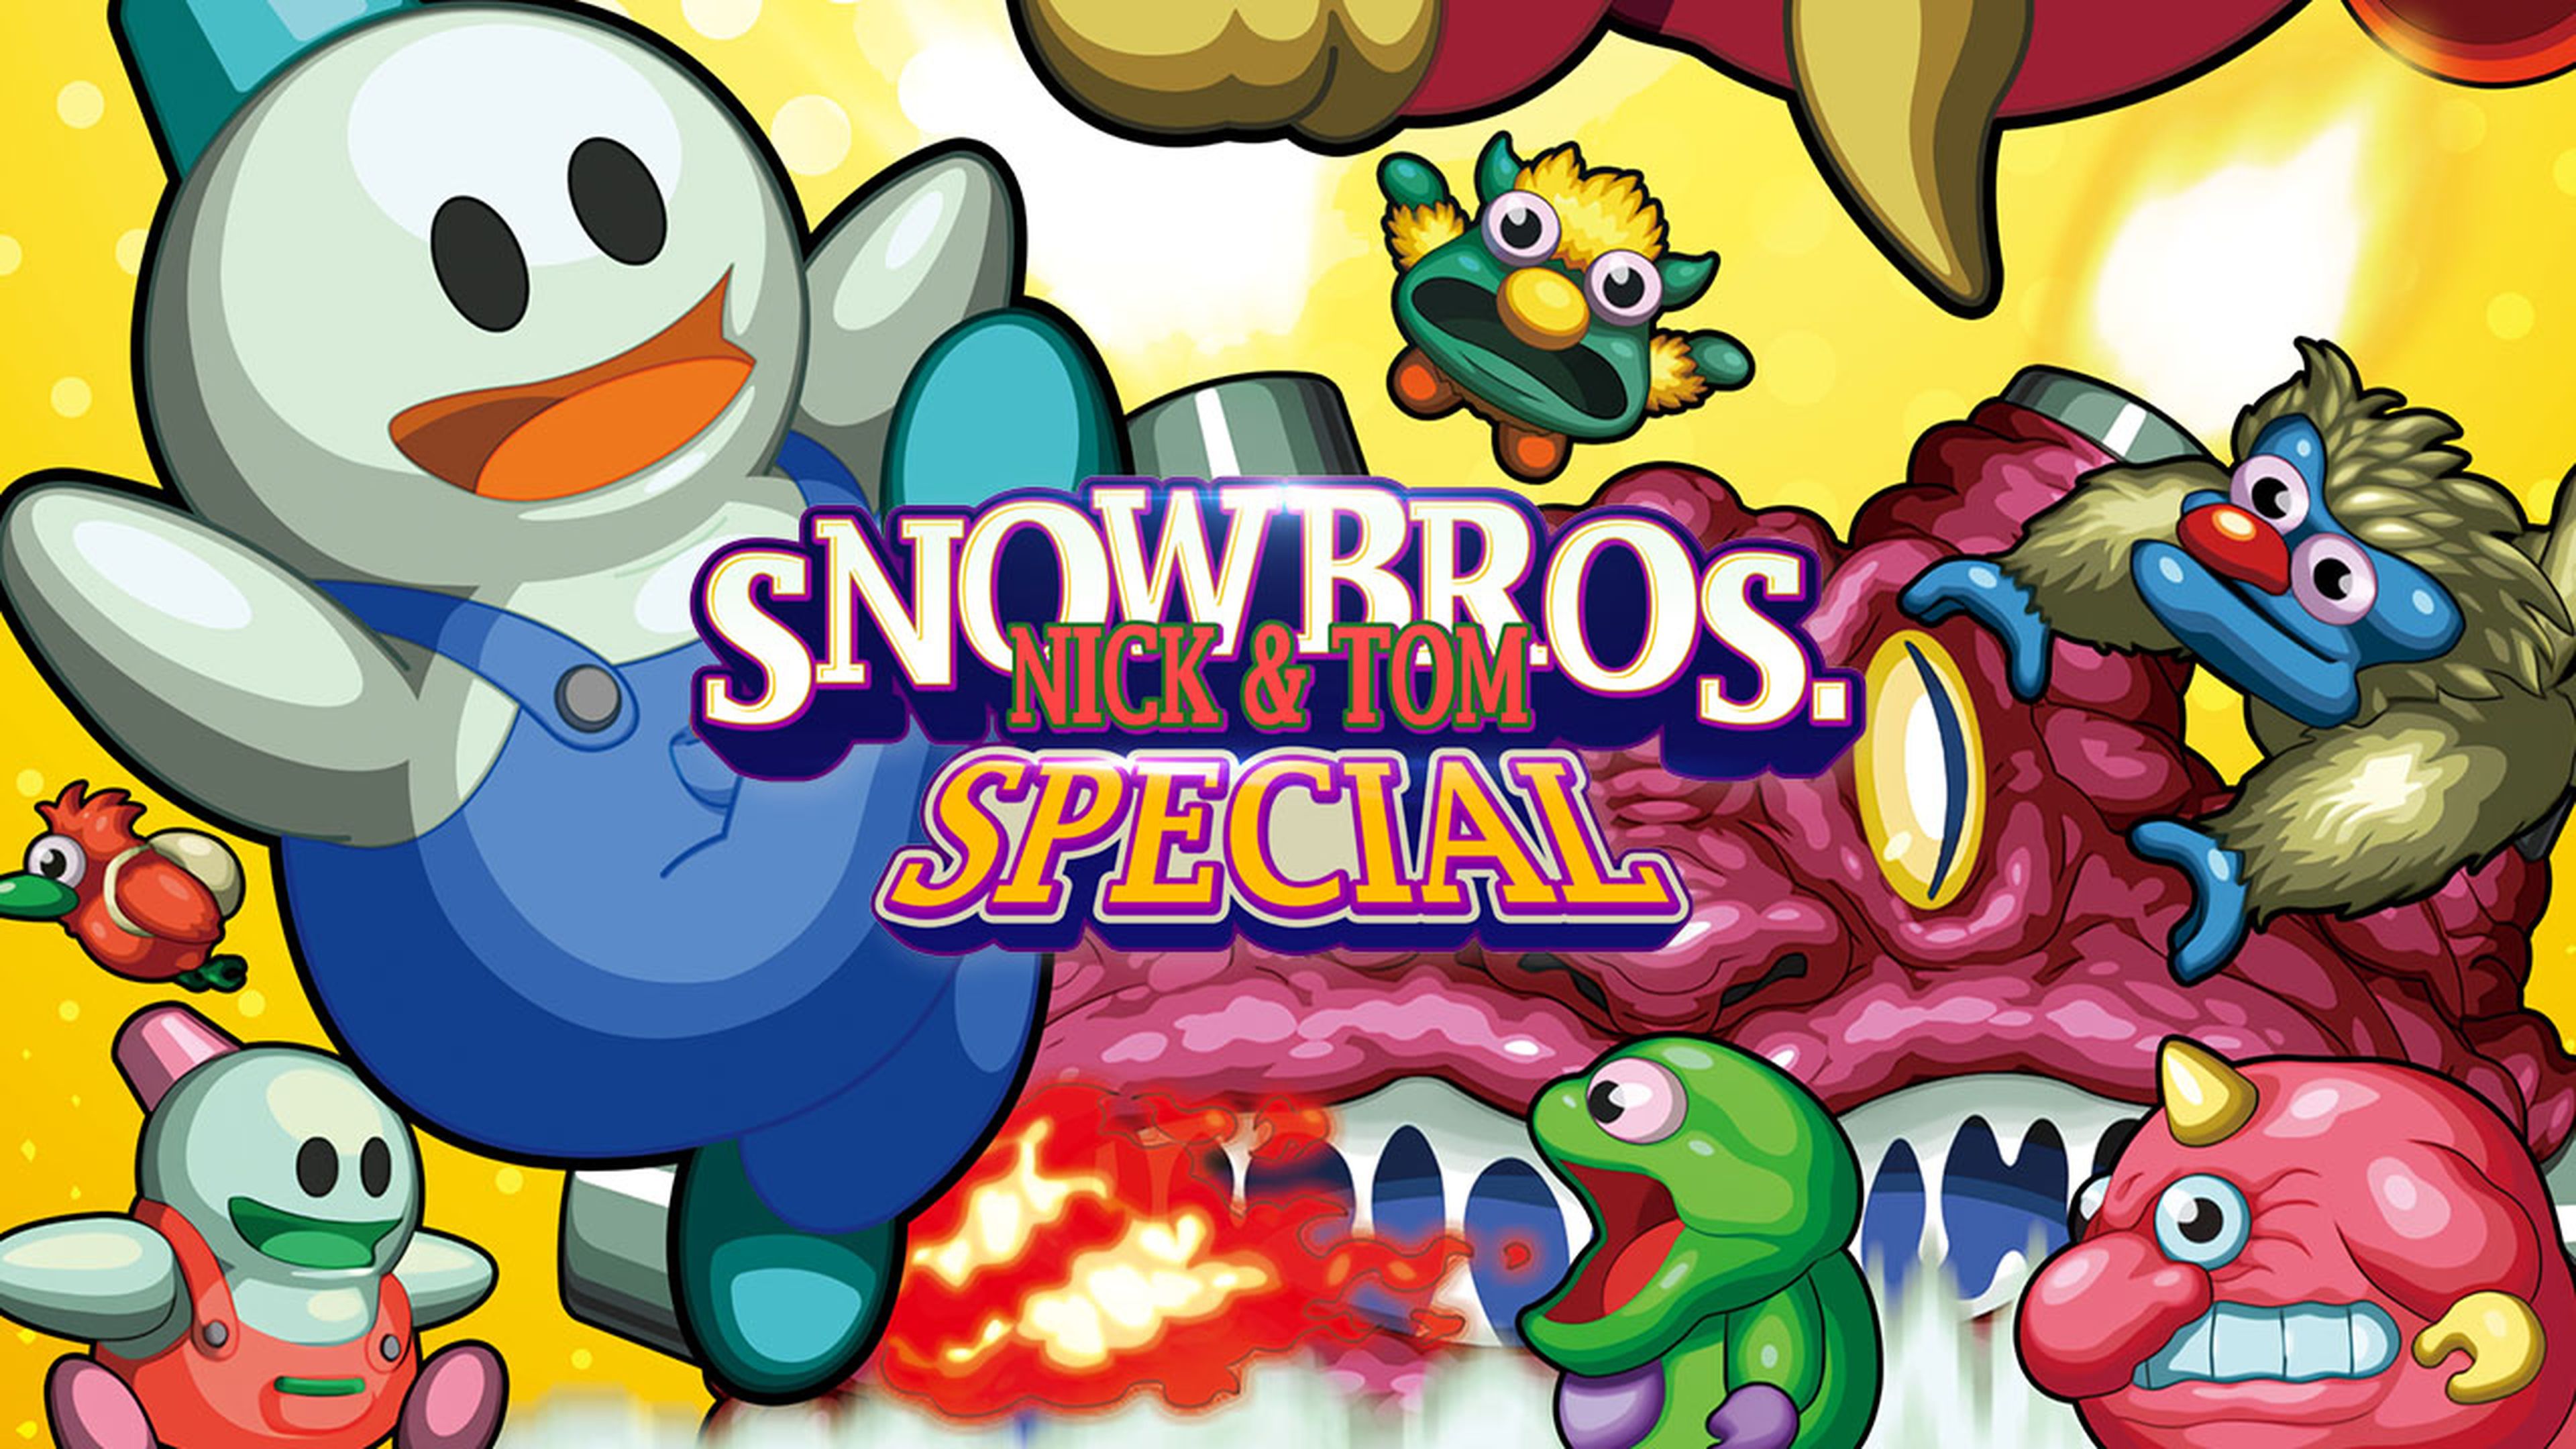 Snow Bros Special